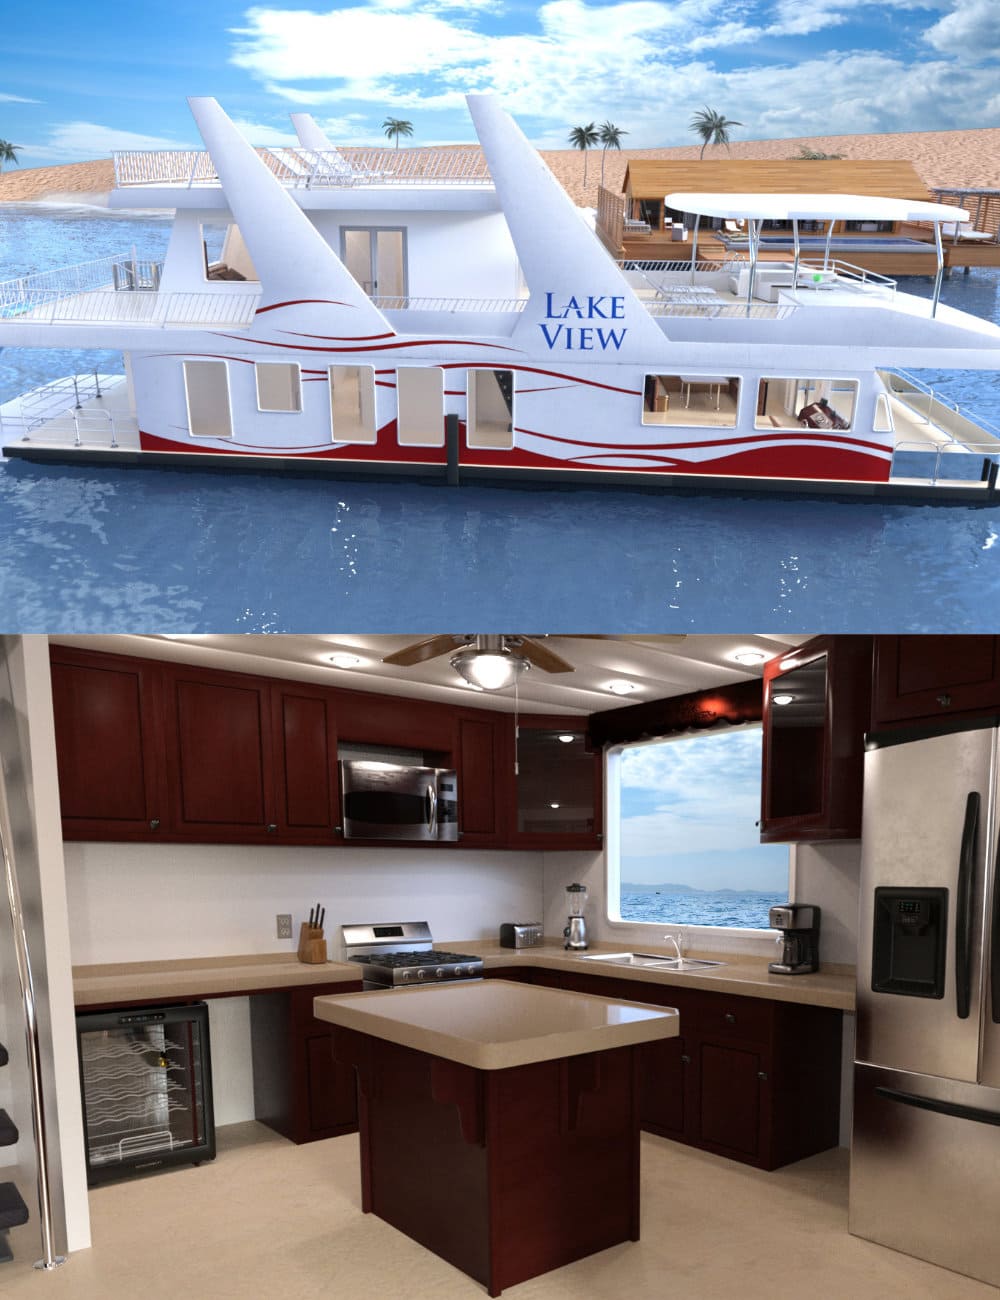 FG Luxury House Boat_DAZ3DDL